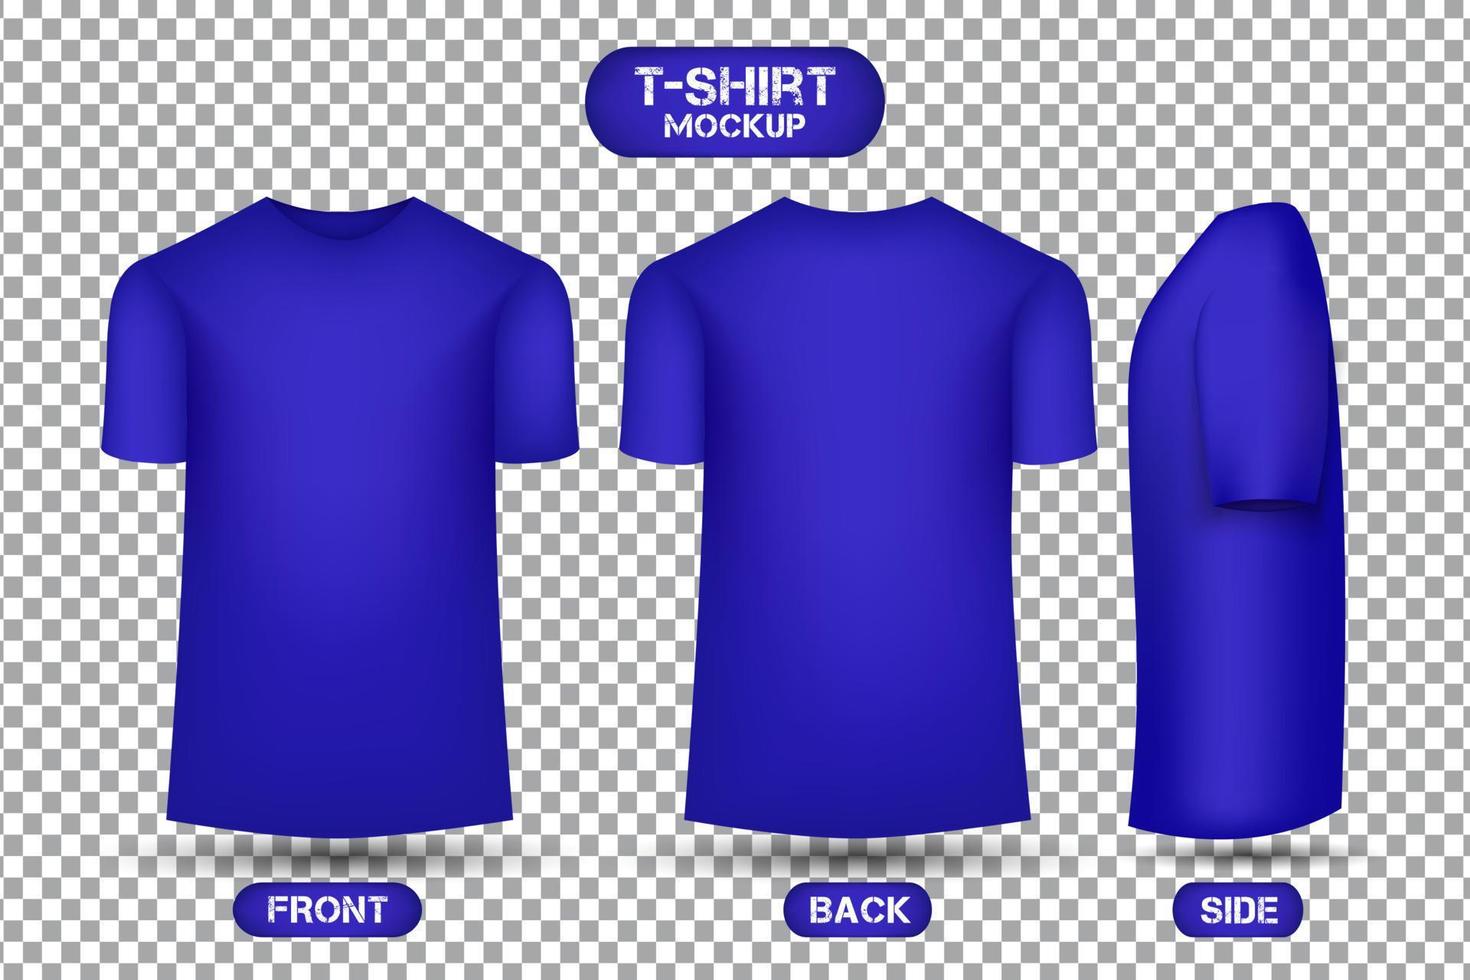 diseño de camiseta azul liso, con vista frontal, trasera y lateral, vector de maqueta de camiseta de estilo 3d